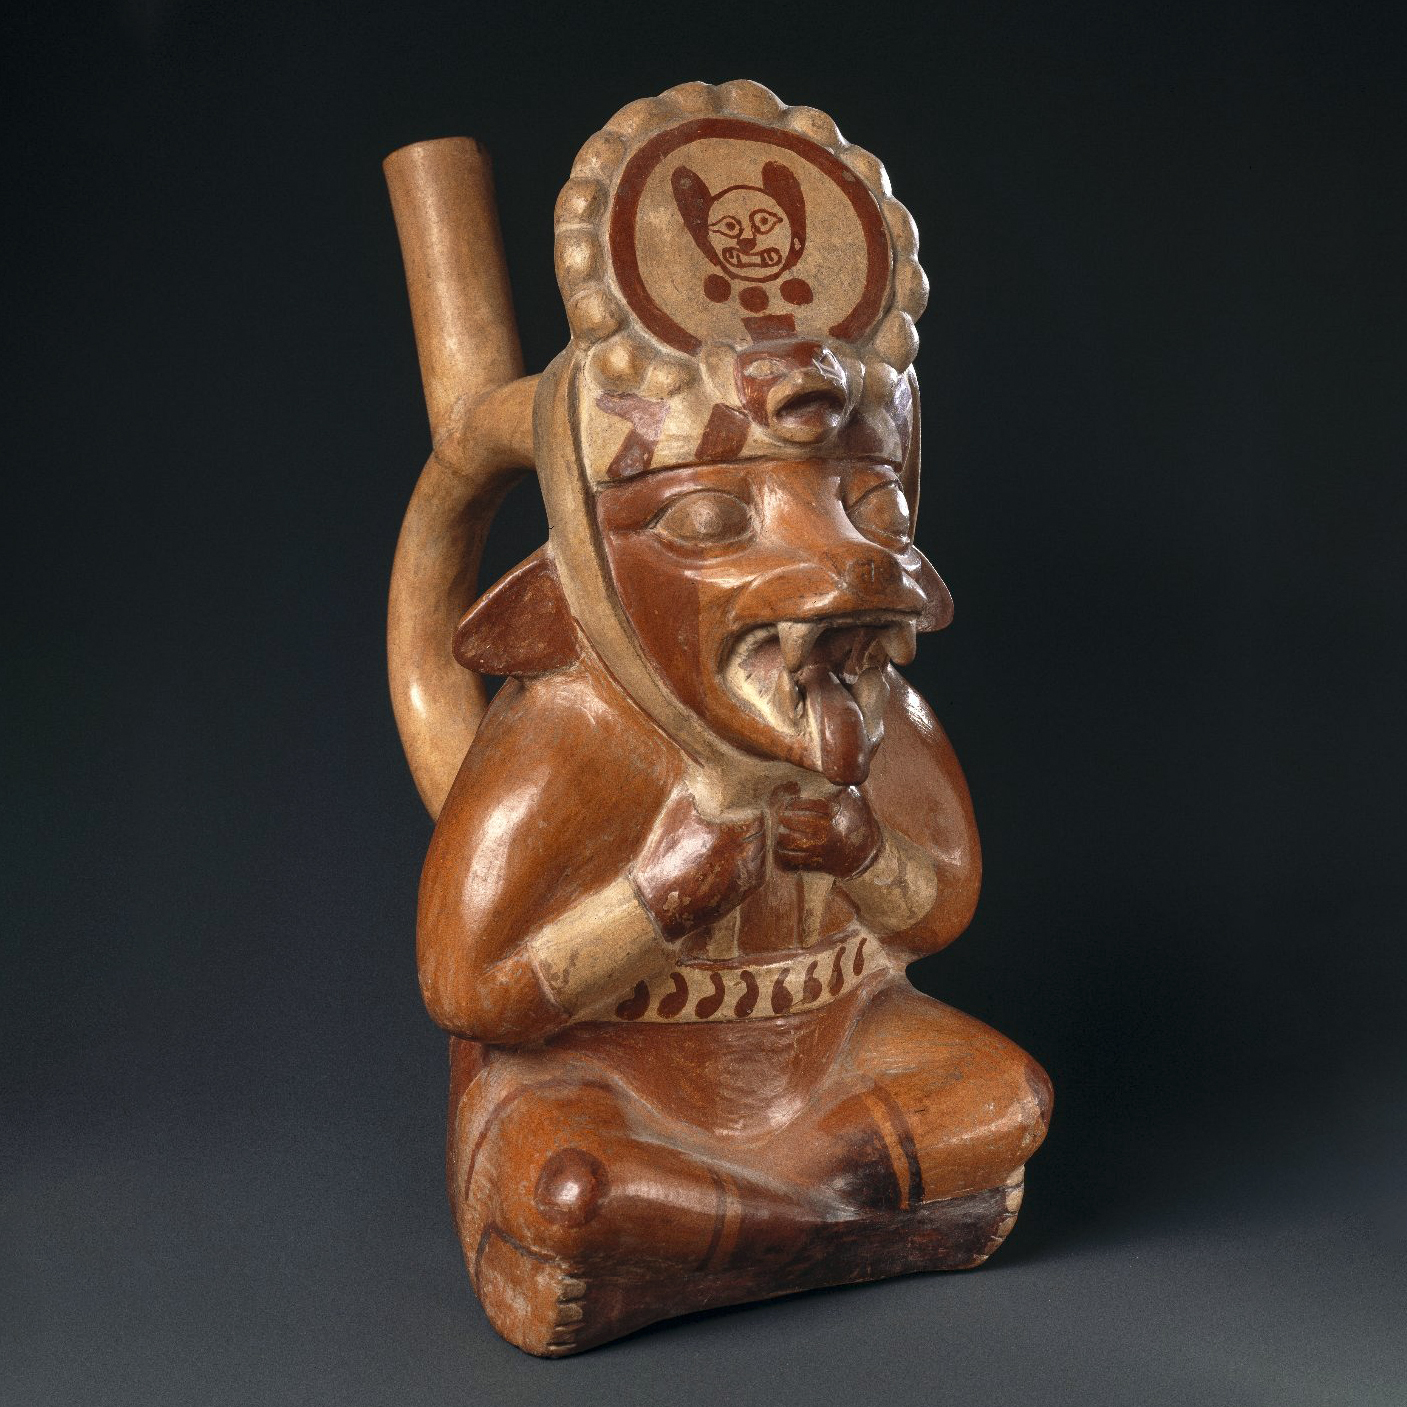 Антропоморфная лиса. Моче, Перу, 400 - 700 гг. н.э. Коллекция Brooklyn Museum.